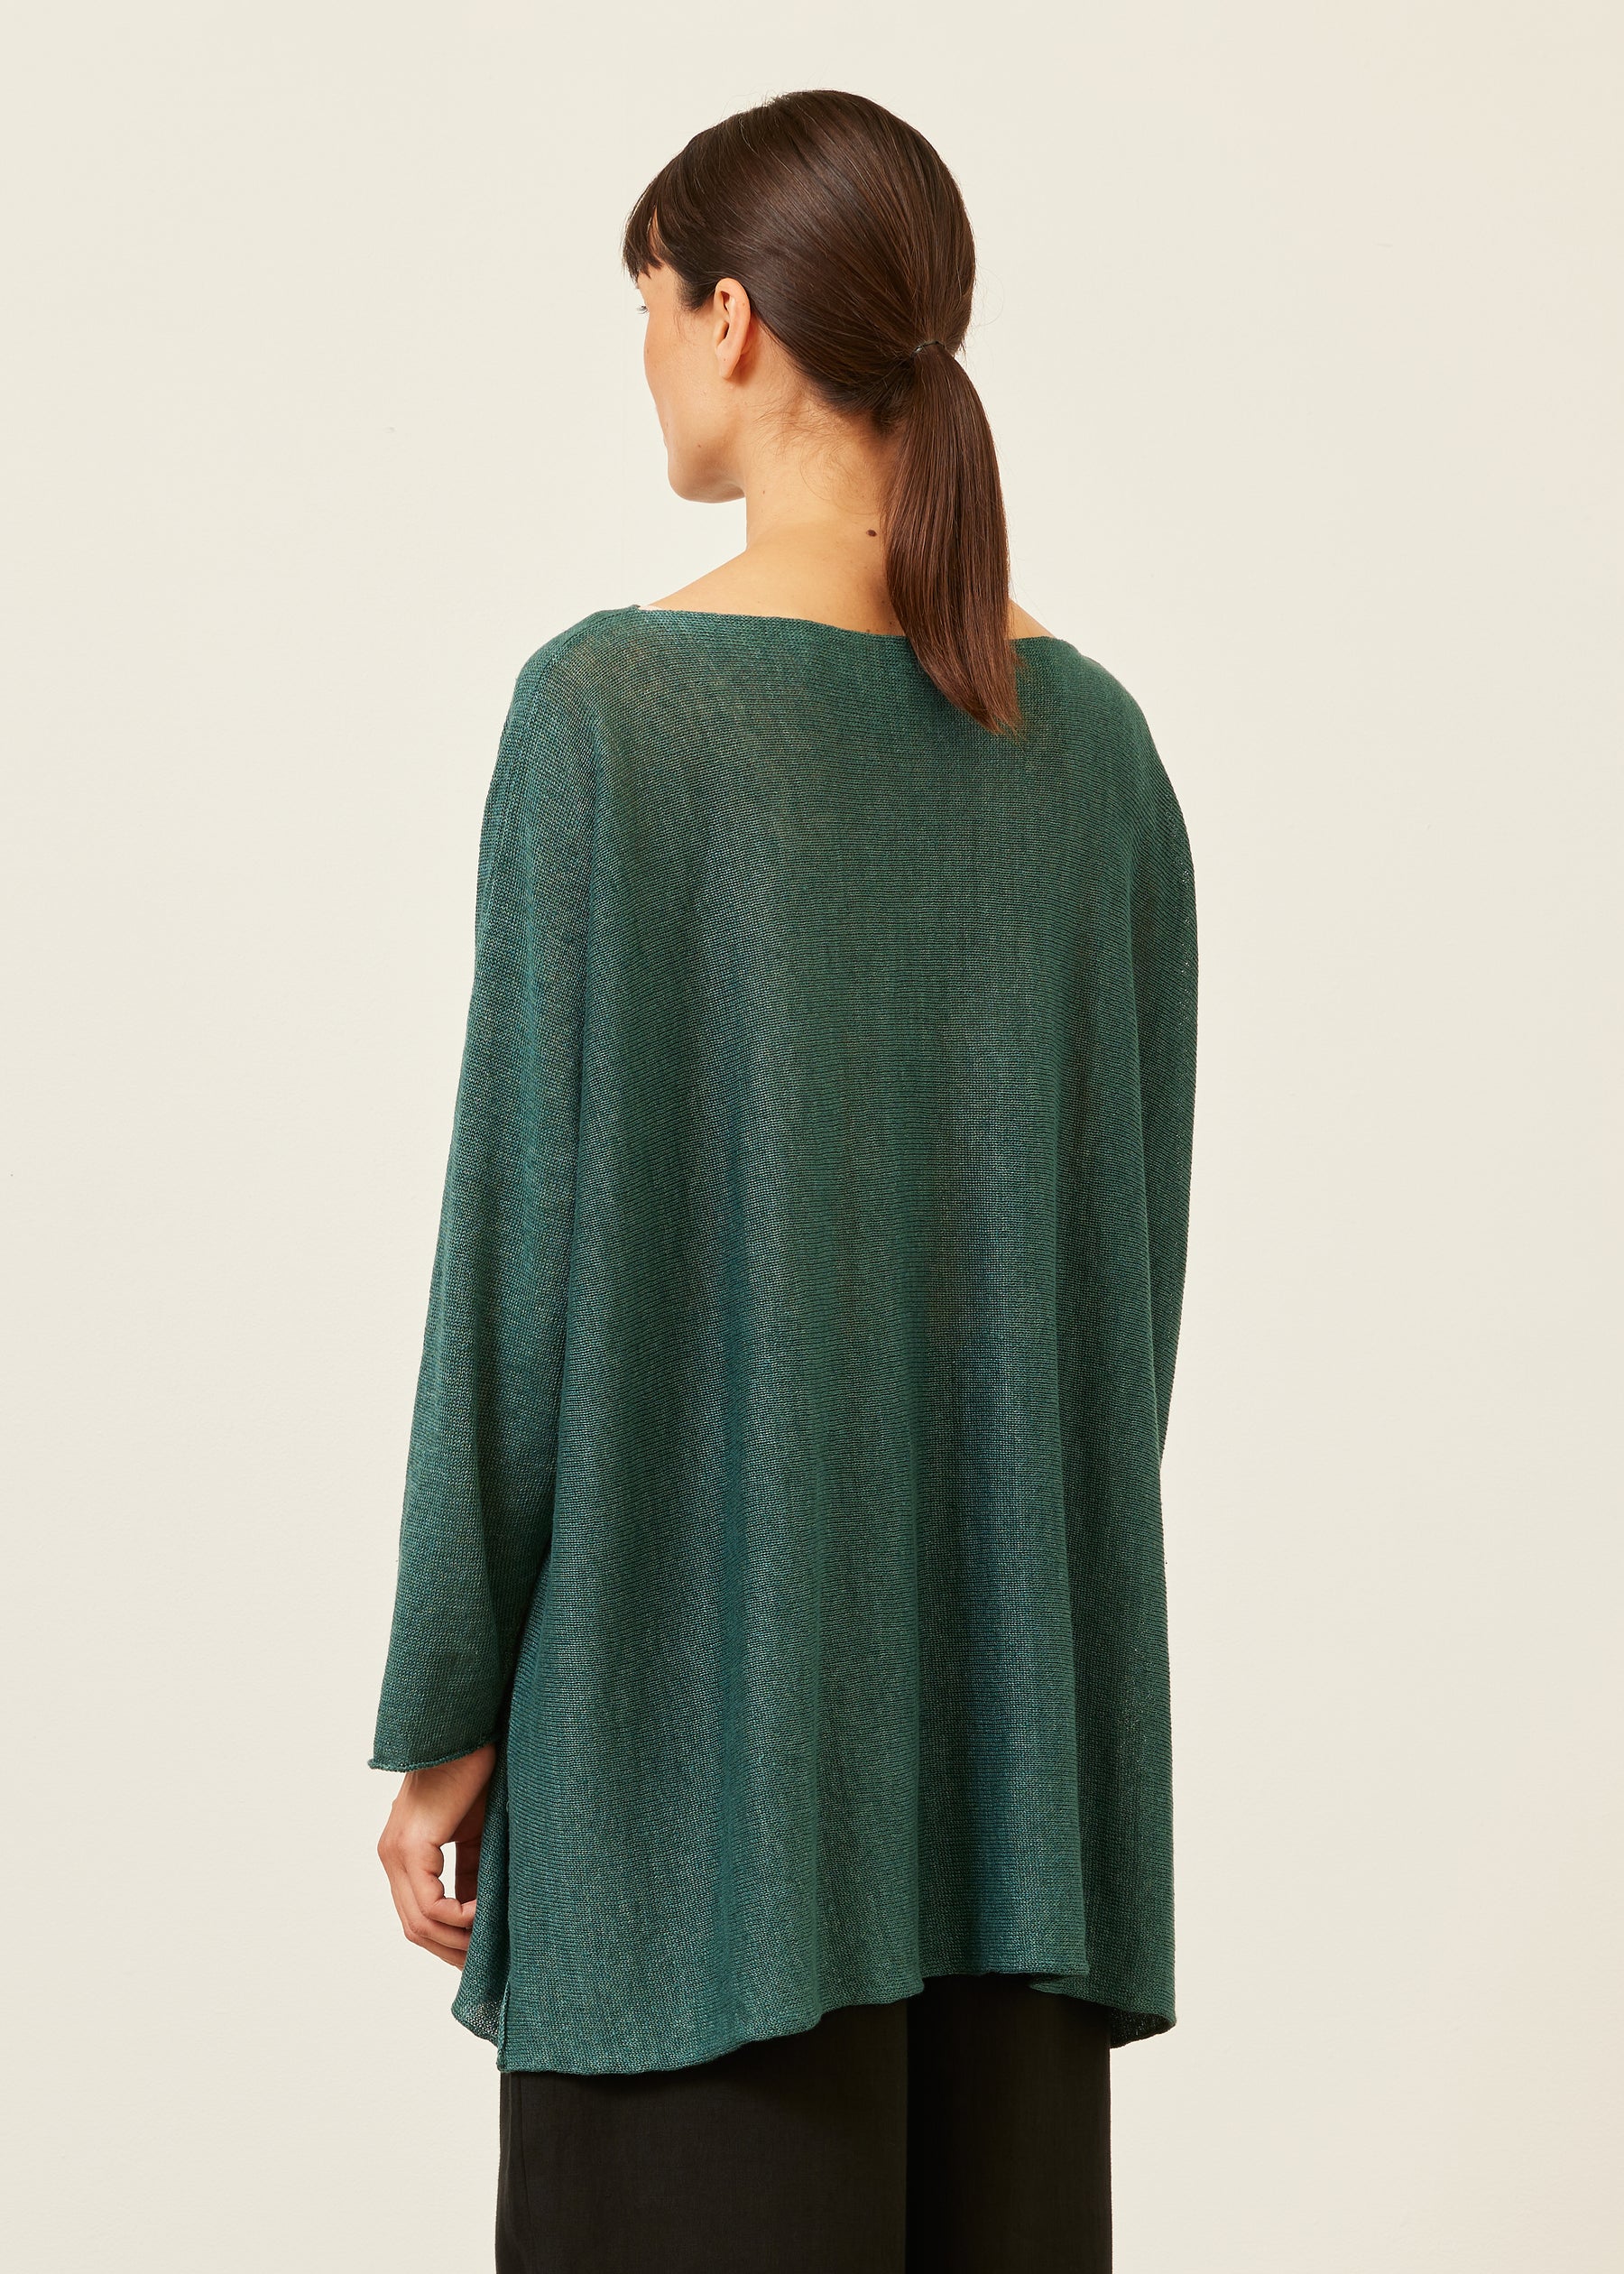 sideways knitted sweater - long